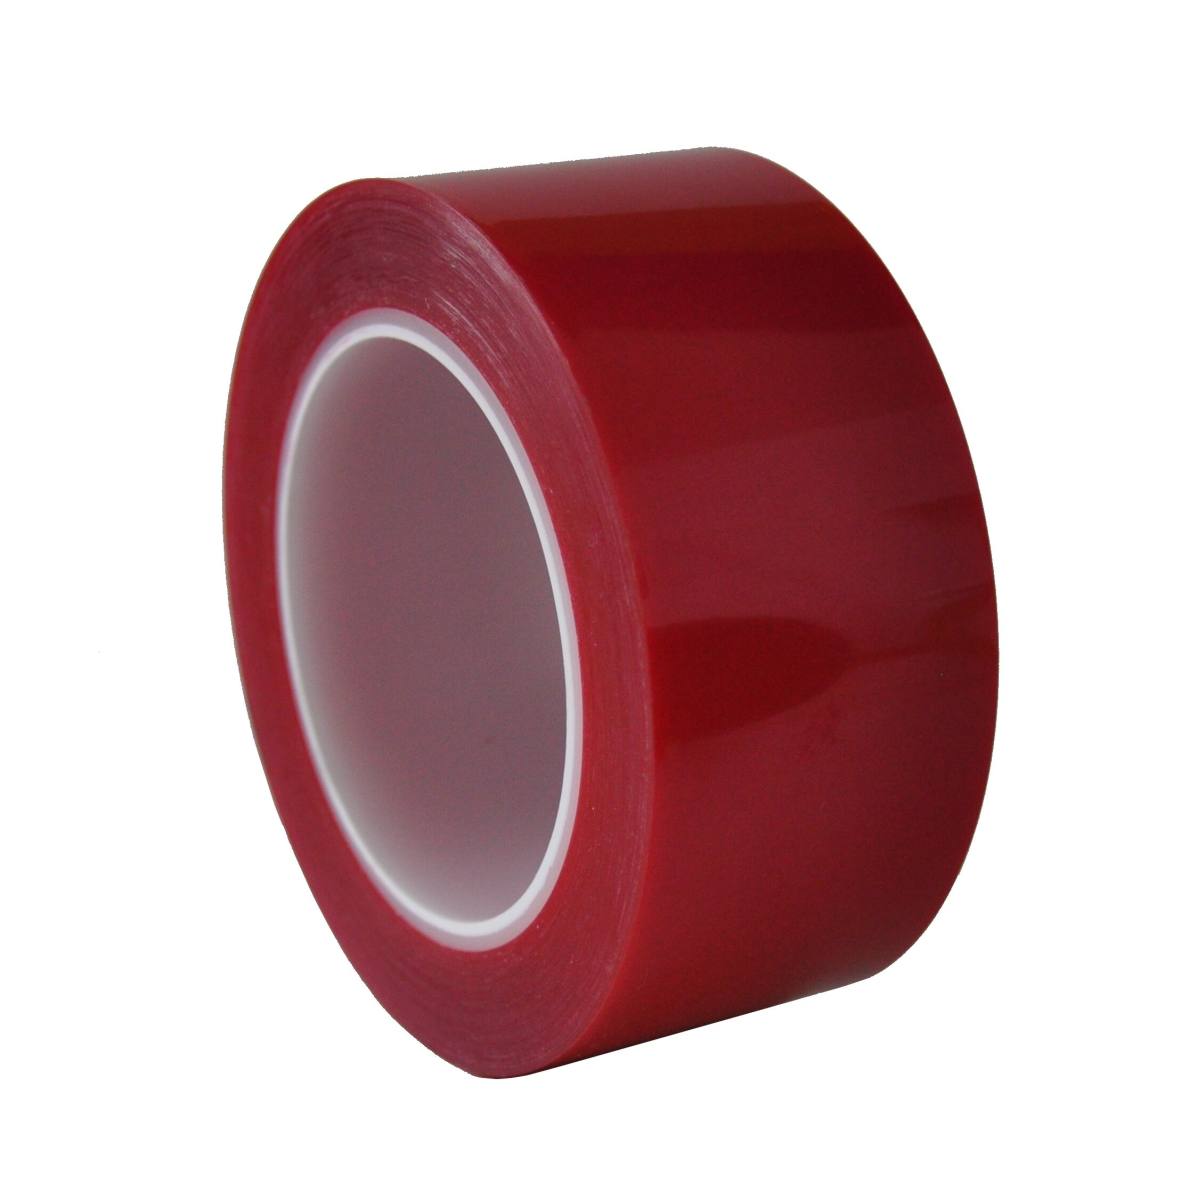 S-K-S 208R nastro adesivo in poliestere, 50mmx66m, rosso